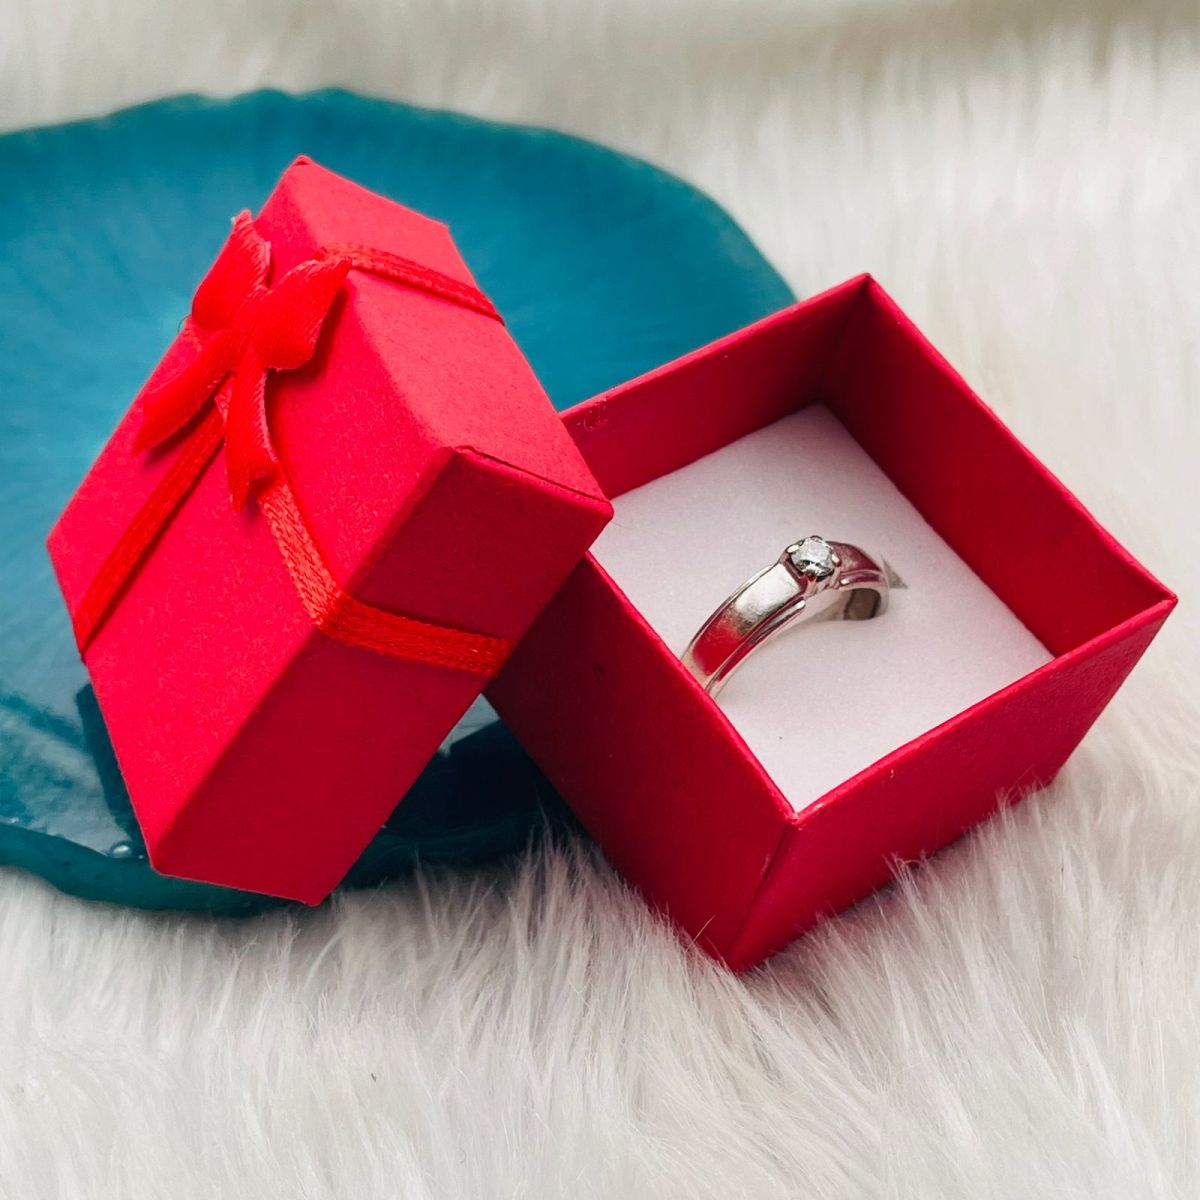 Buy FOREVER BLINGS Men Jewellery Black Stainless Steel Ring for Men Boys  Fancy Stylish Rings Valentine Gift for Boyfriend at Amazon.in